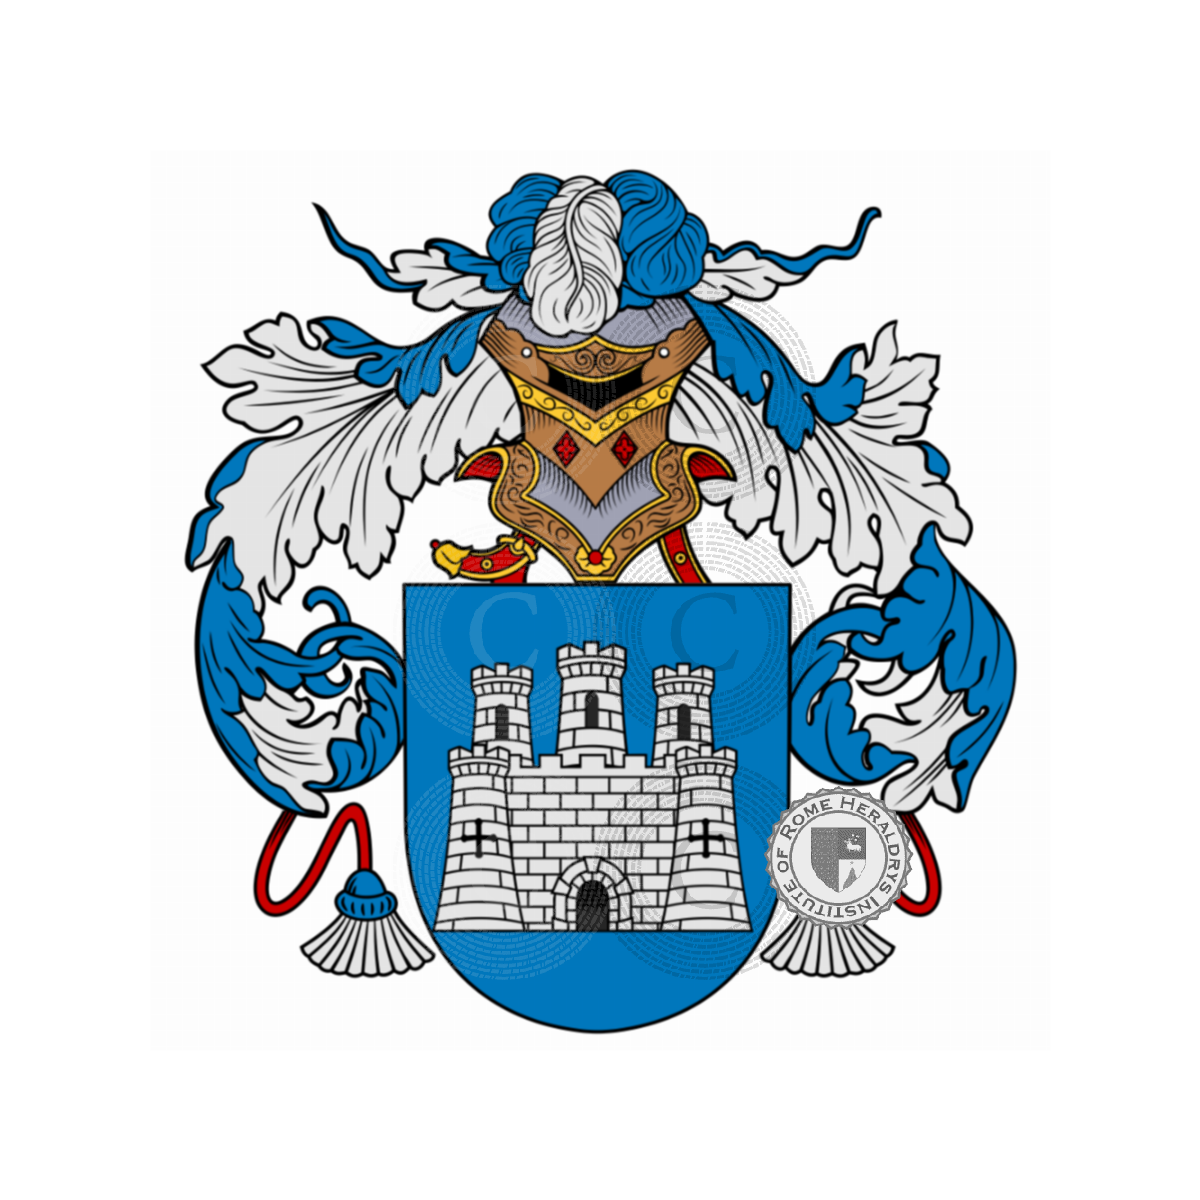 Wappen der FamilieVial